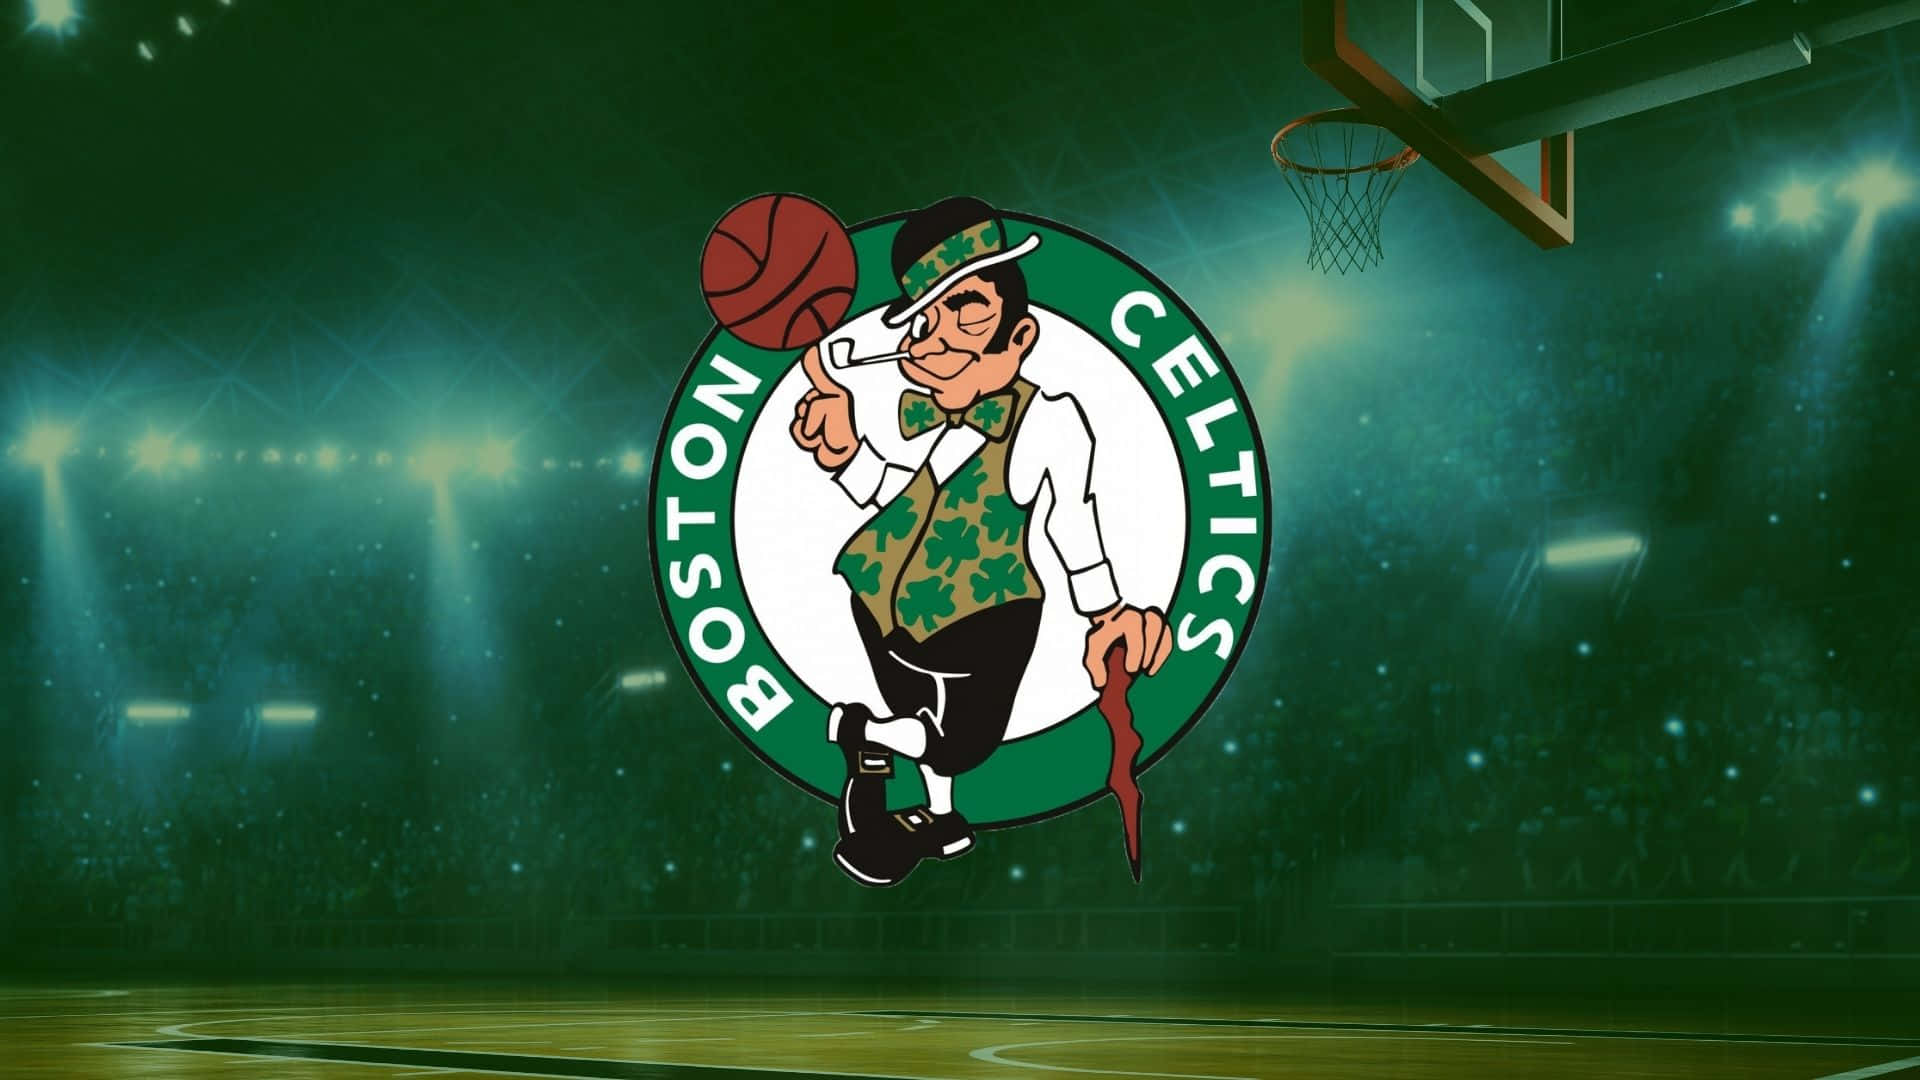 Celebrate success with the Boston Celtics! Wallpaper